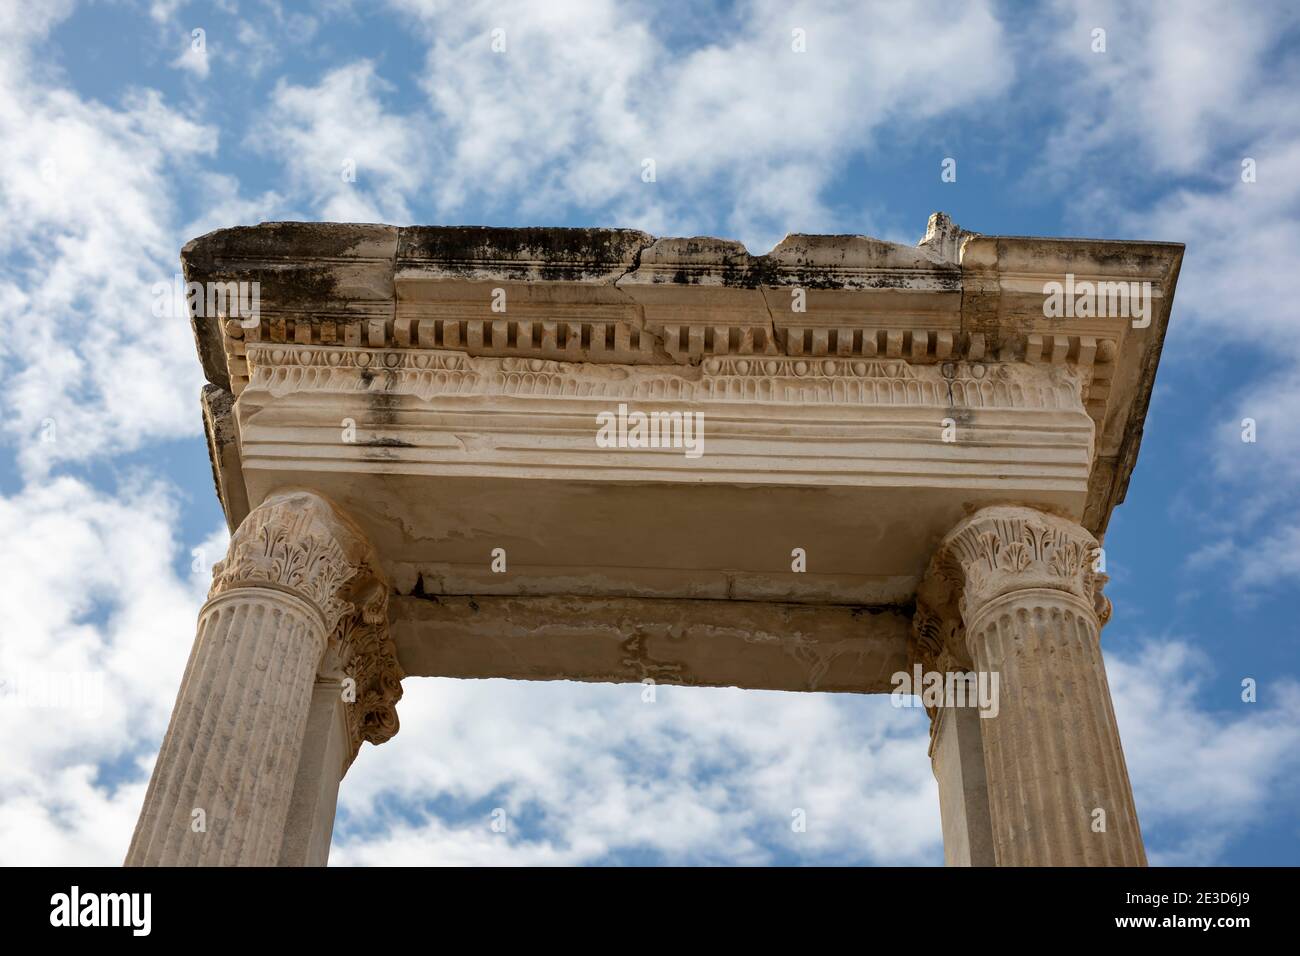 La porte ou la colonne de la ville antique d'Éphèse, Turquie Banque D'Images